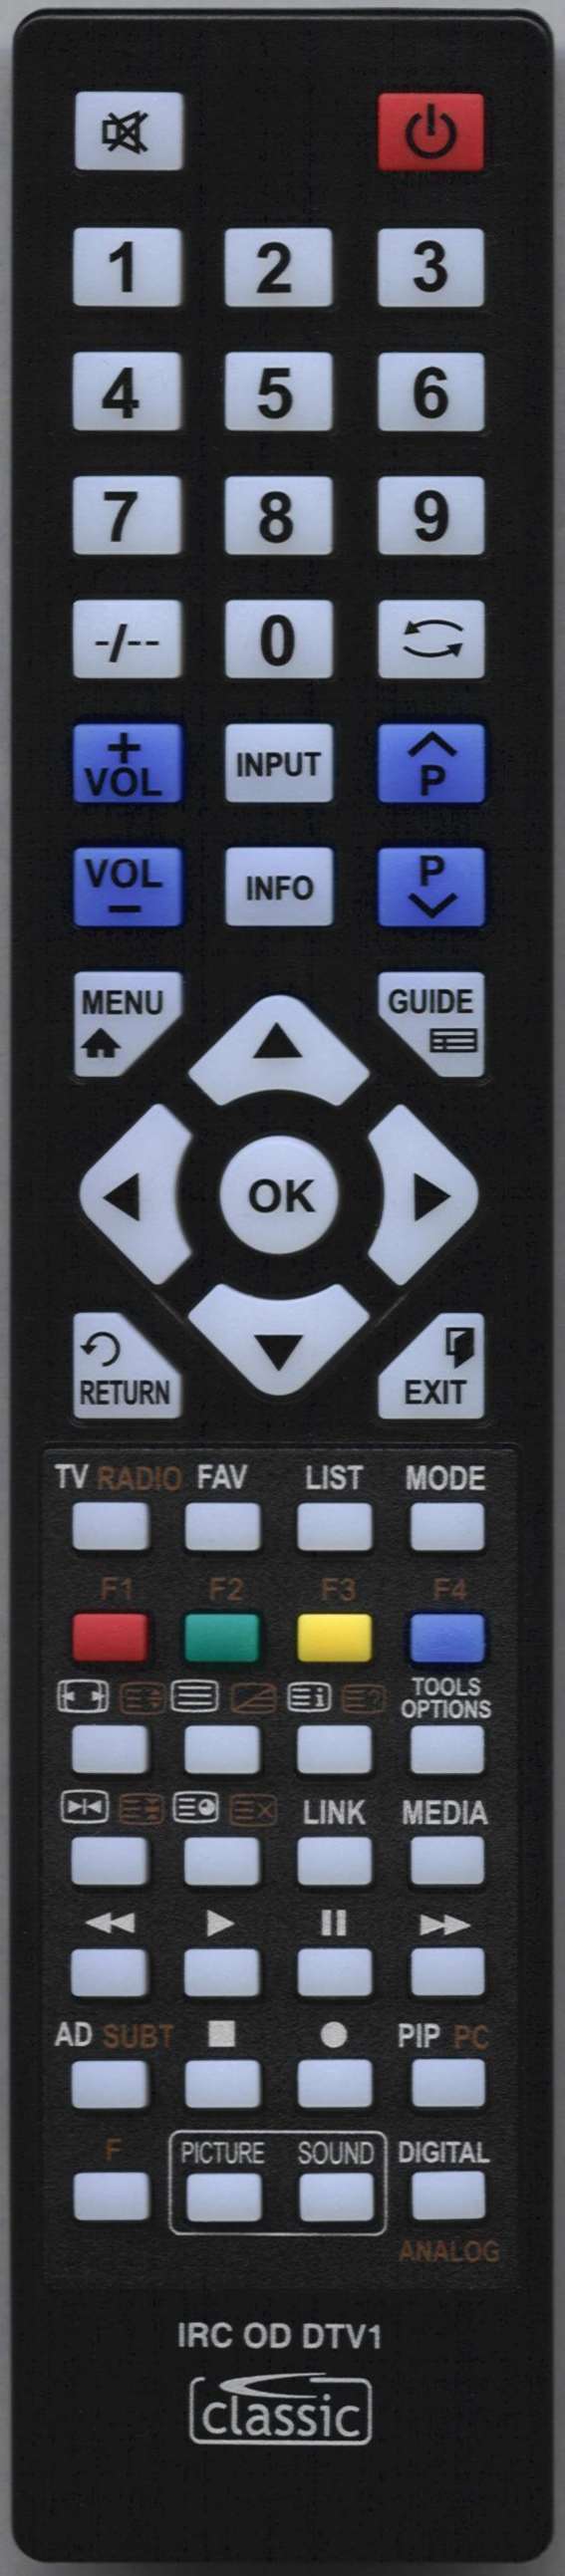 SEIKI SE55FO02UK Remote Control